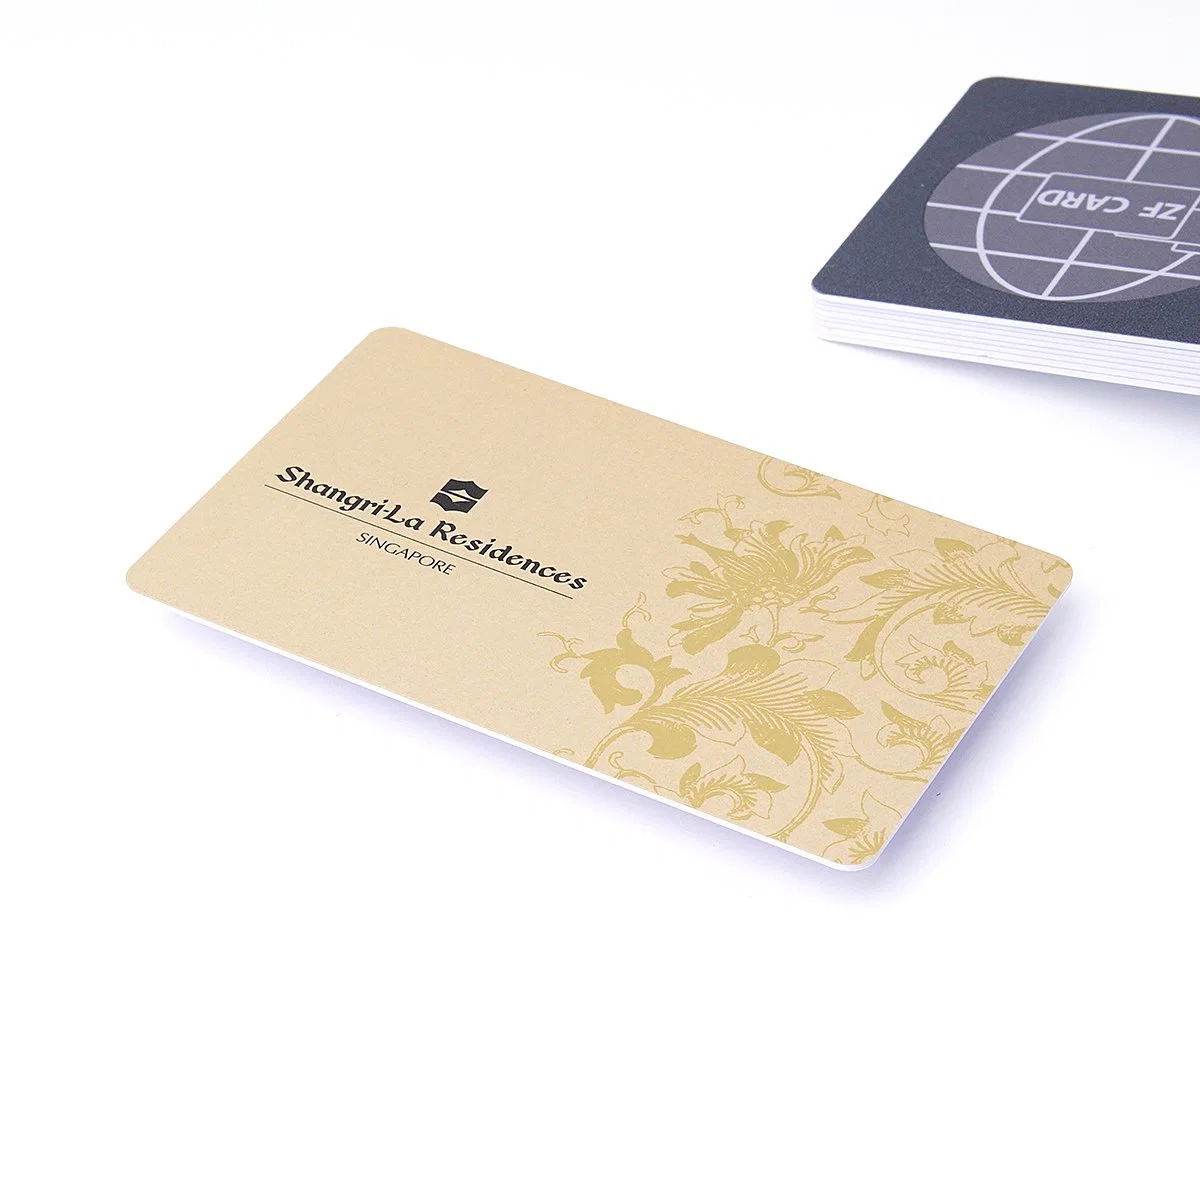 Ti2048 ISO 15693 PVC touche d'impression de carte